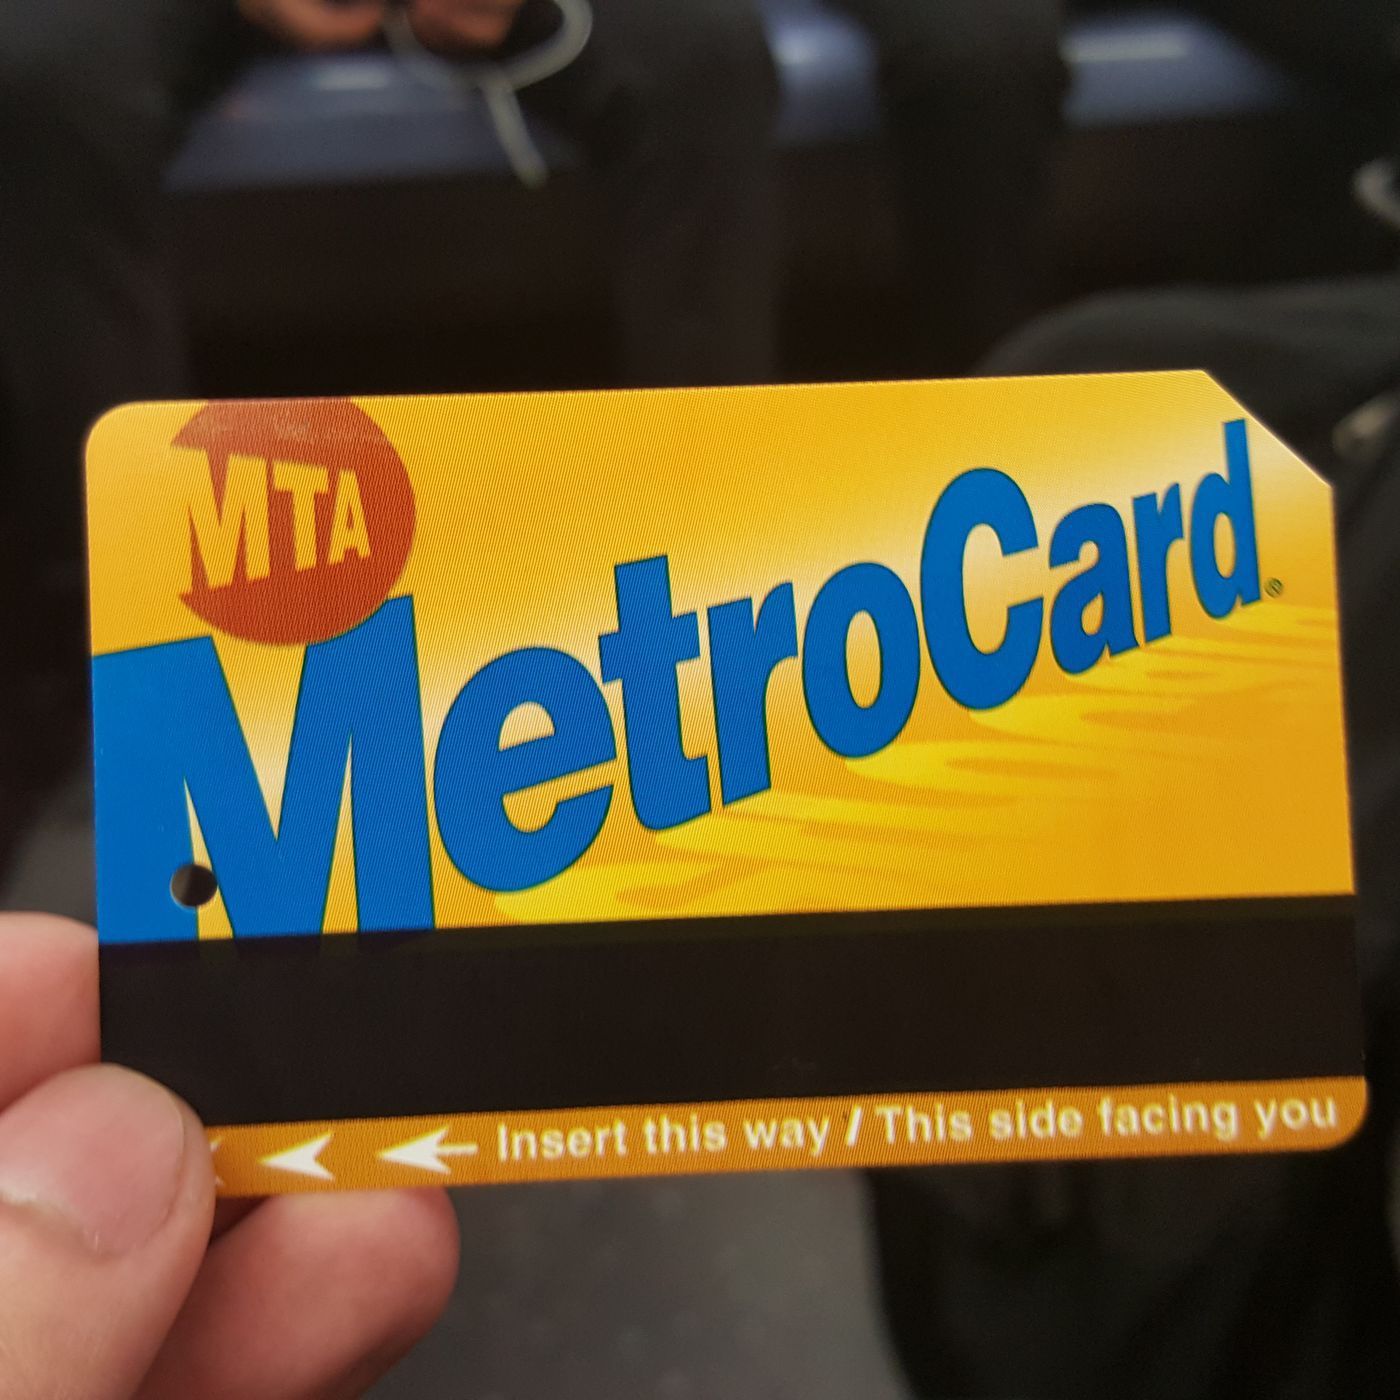 Metro card